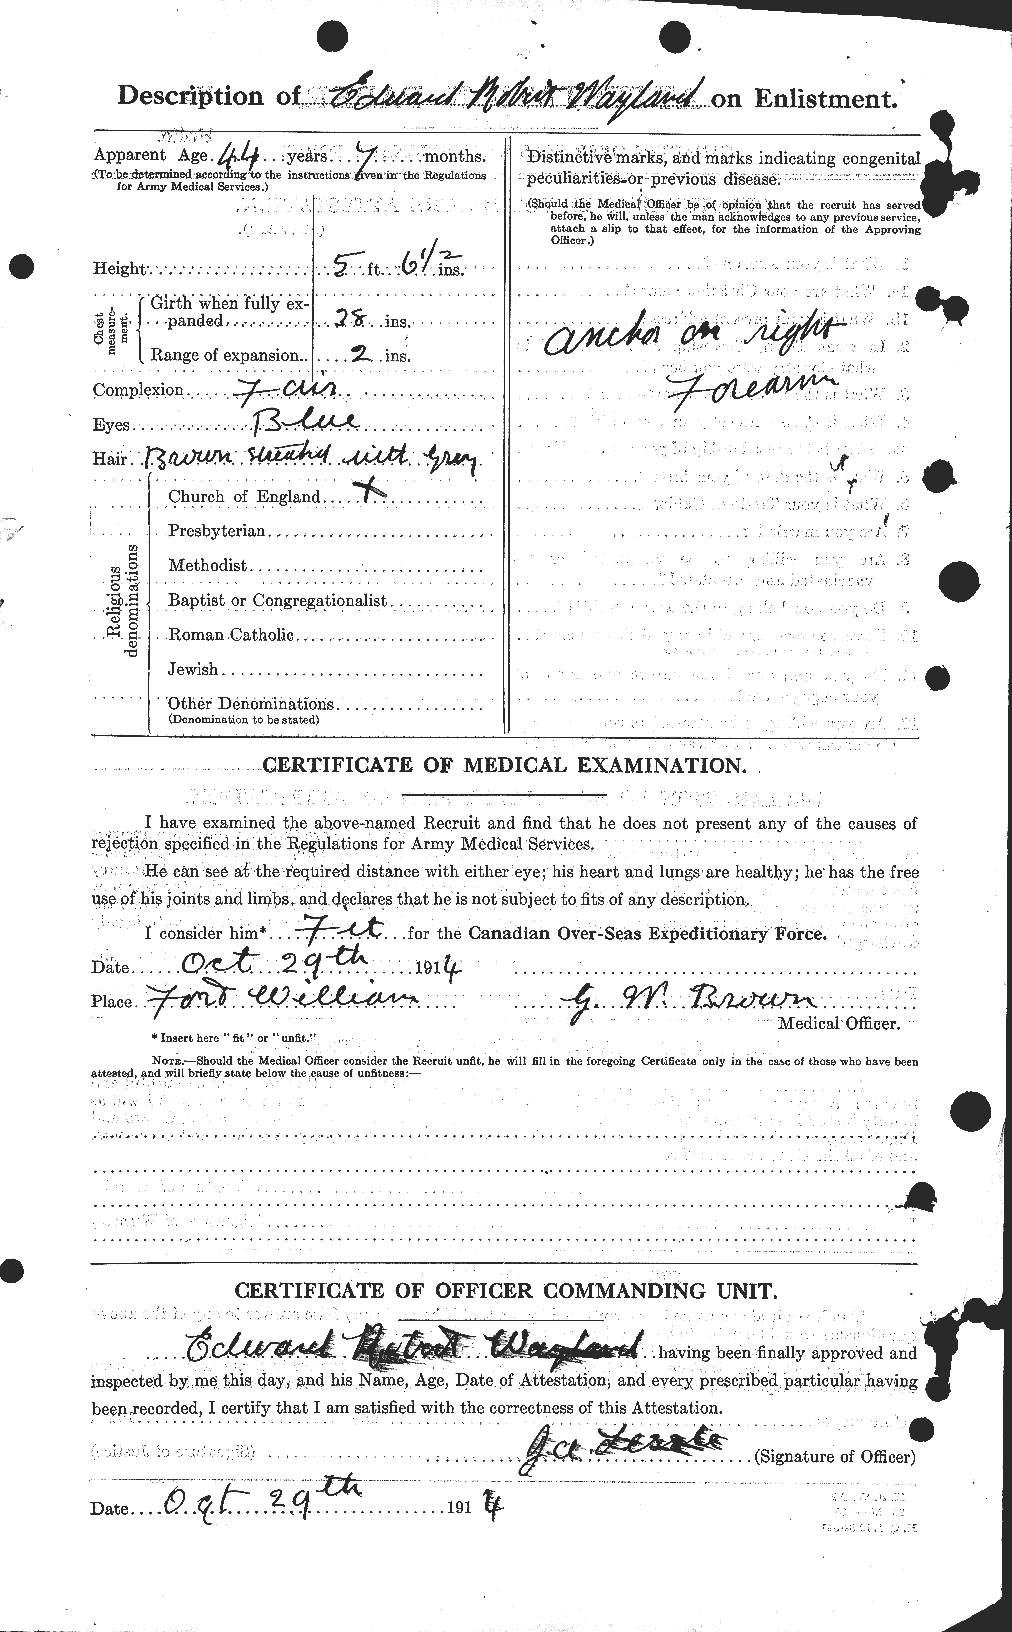 Dossiers du Personnel de la Première Guerre mondiale - CEC 664003b